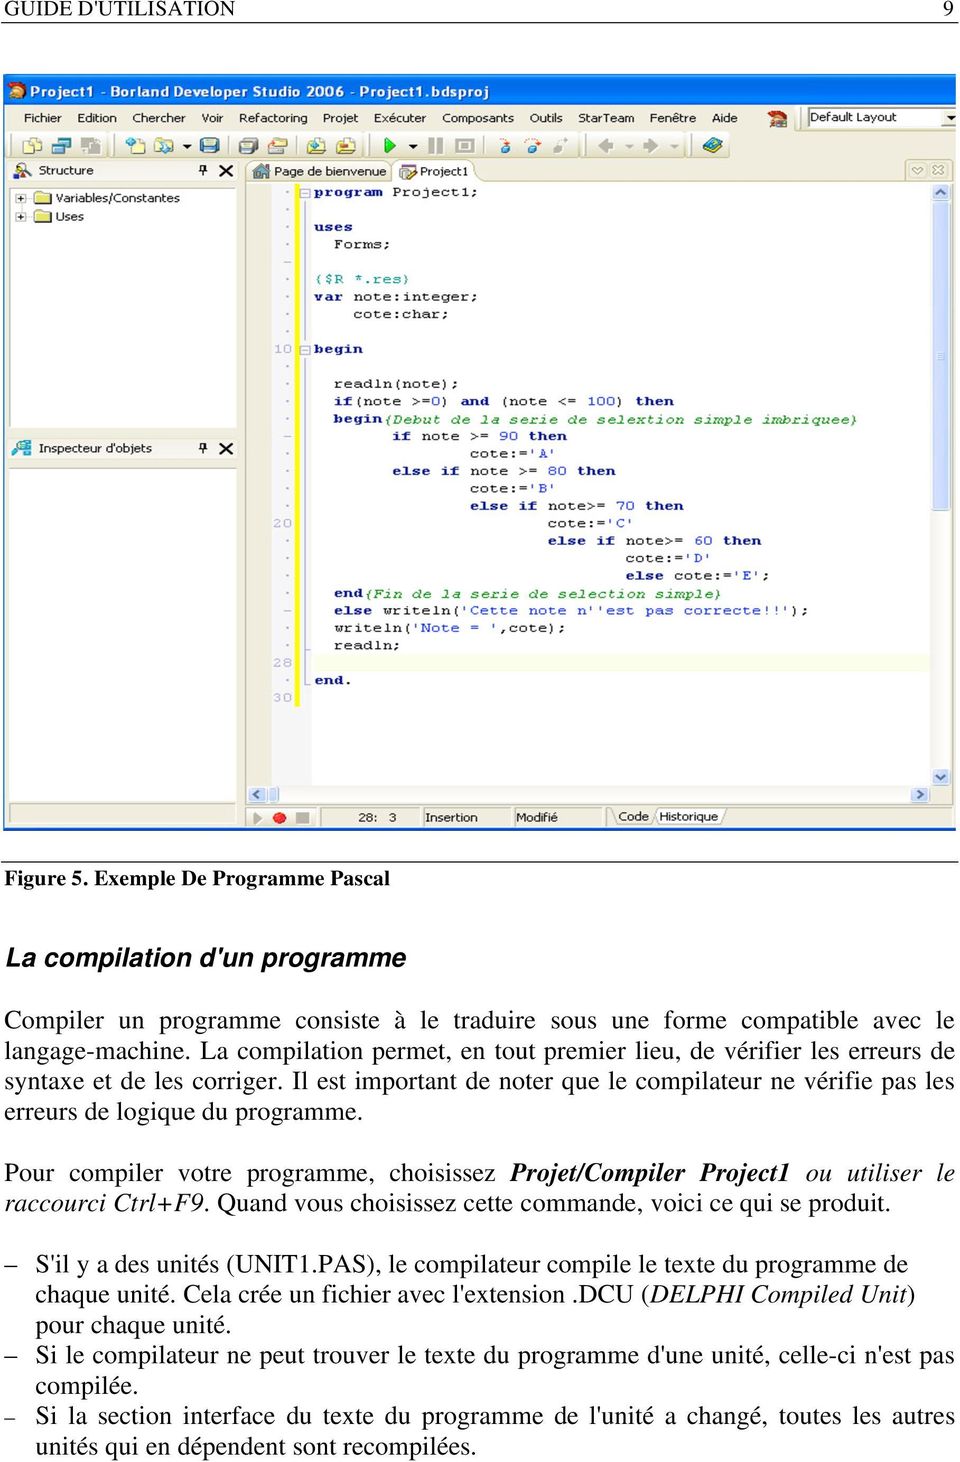 Pour compiler votre programme, choisissez Projet/Compiler Project1 ou utiliser le raccourci Ctrl+F9. Quand vous choisissez cette commande, voici ce qui se produit. S'il y a des unités (UNIT1.